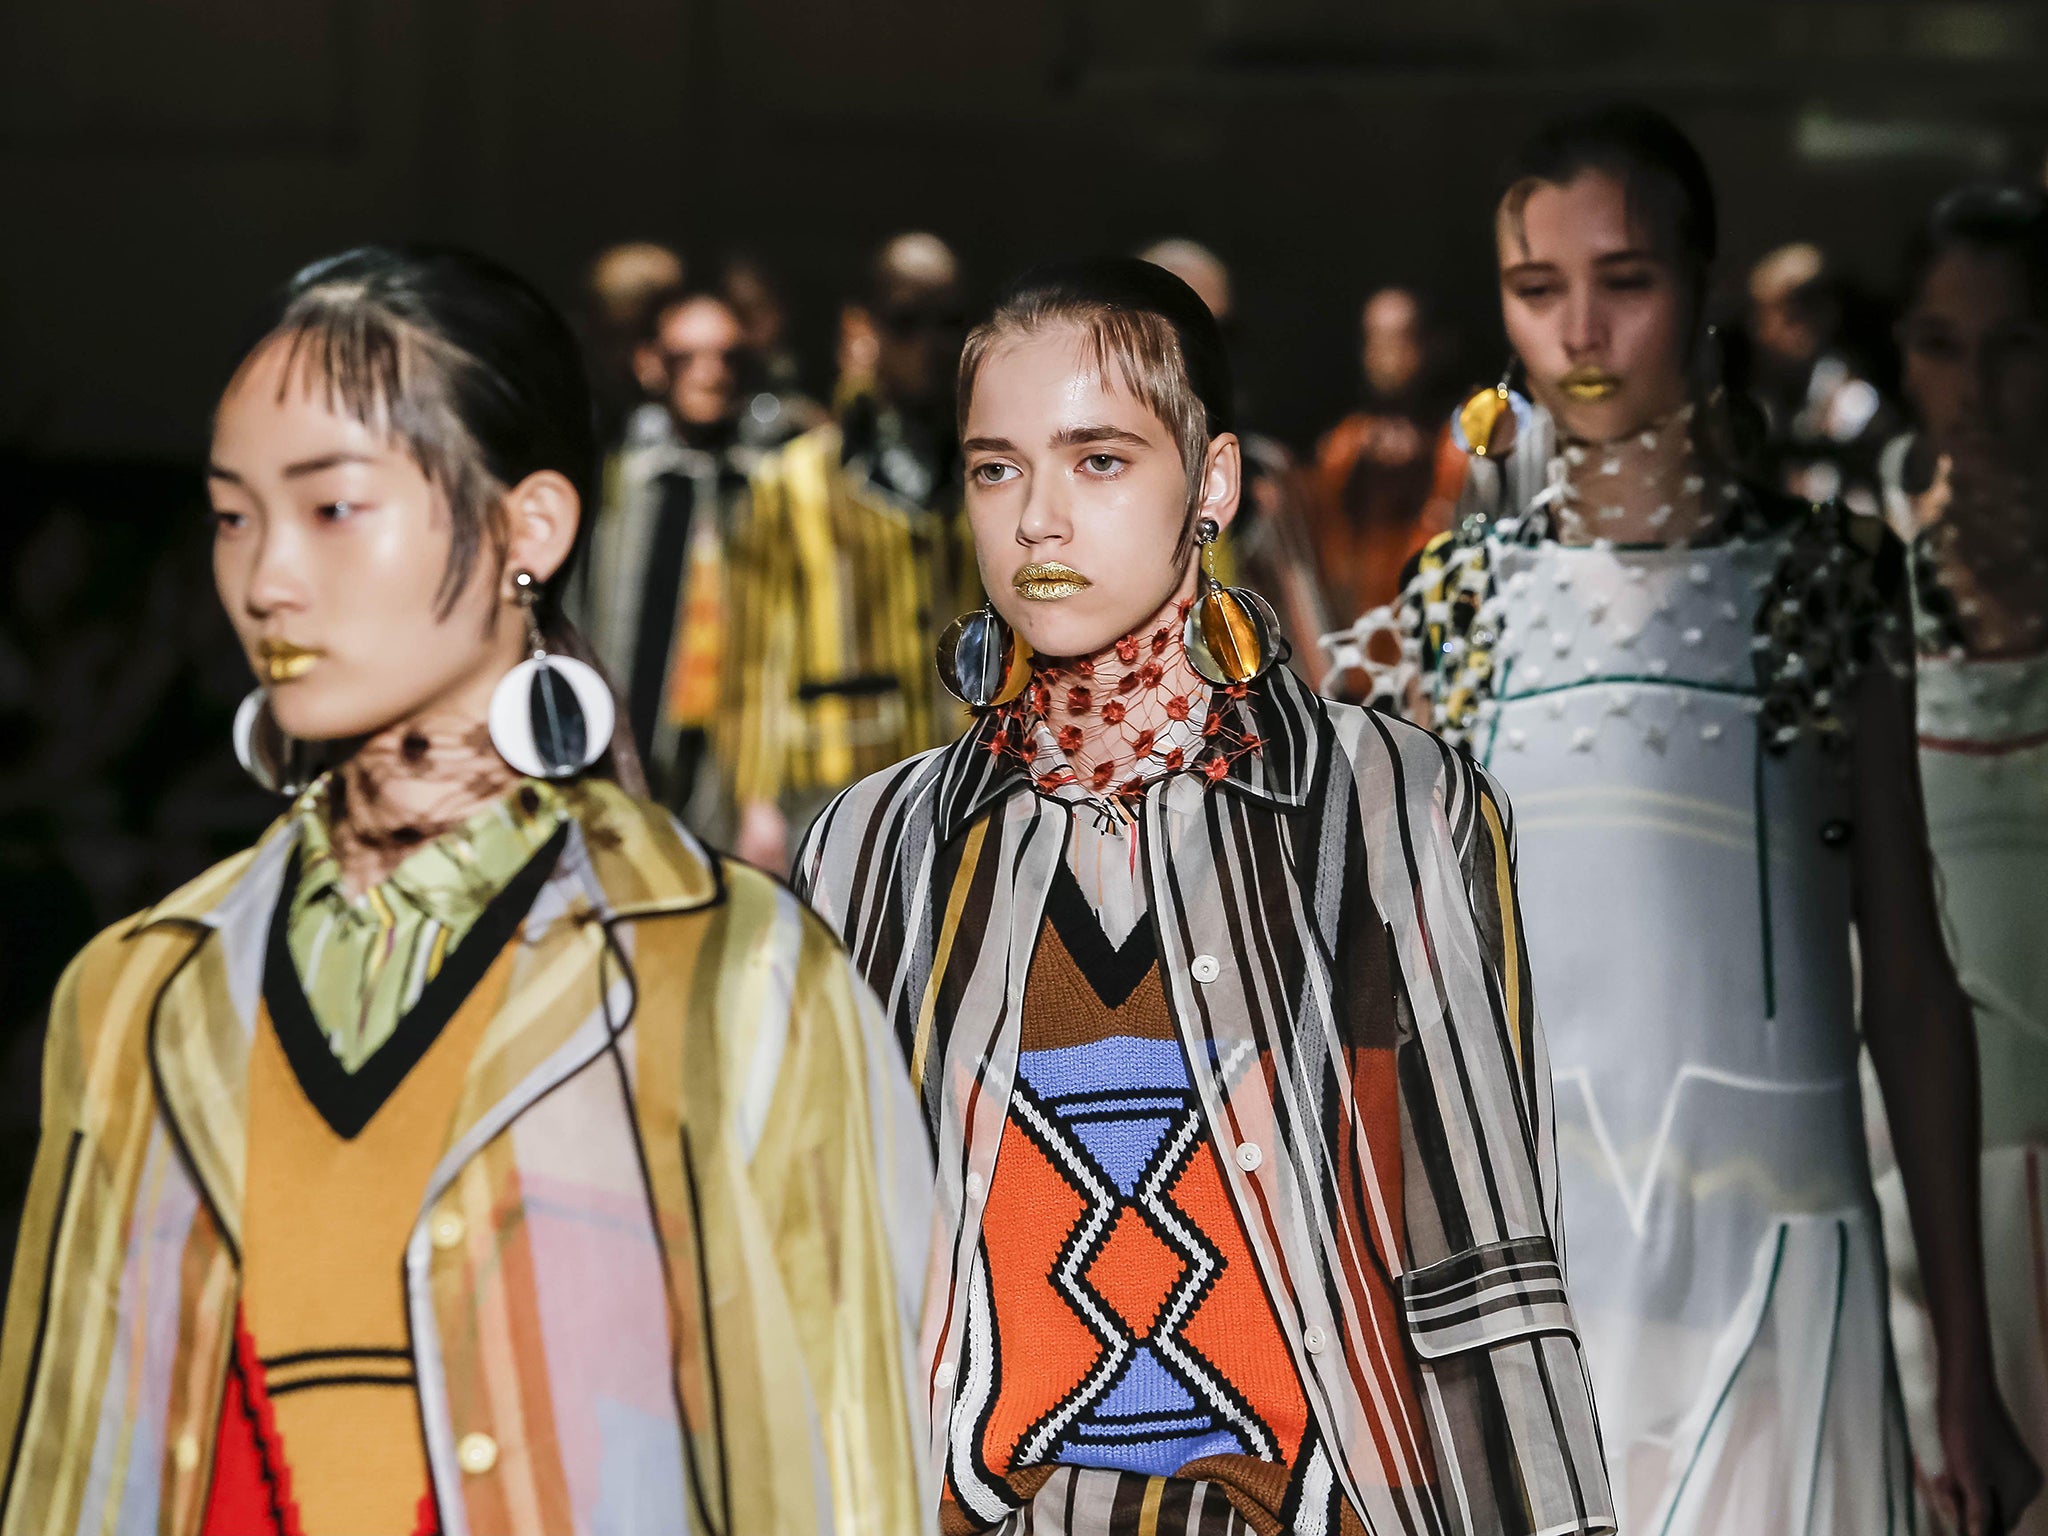 Milan Fashion Week: Miuccia Prada's clothes speak for themselves